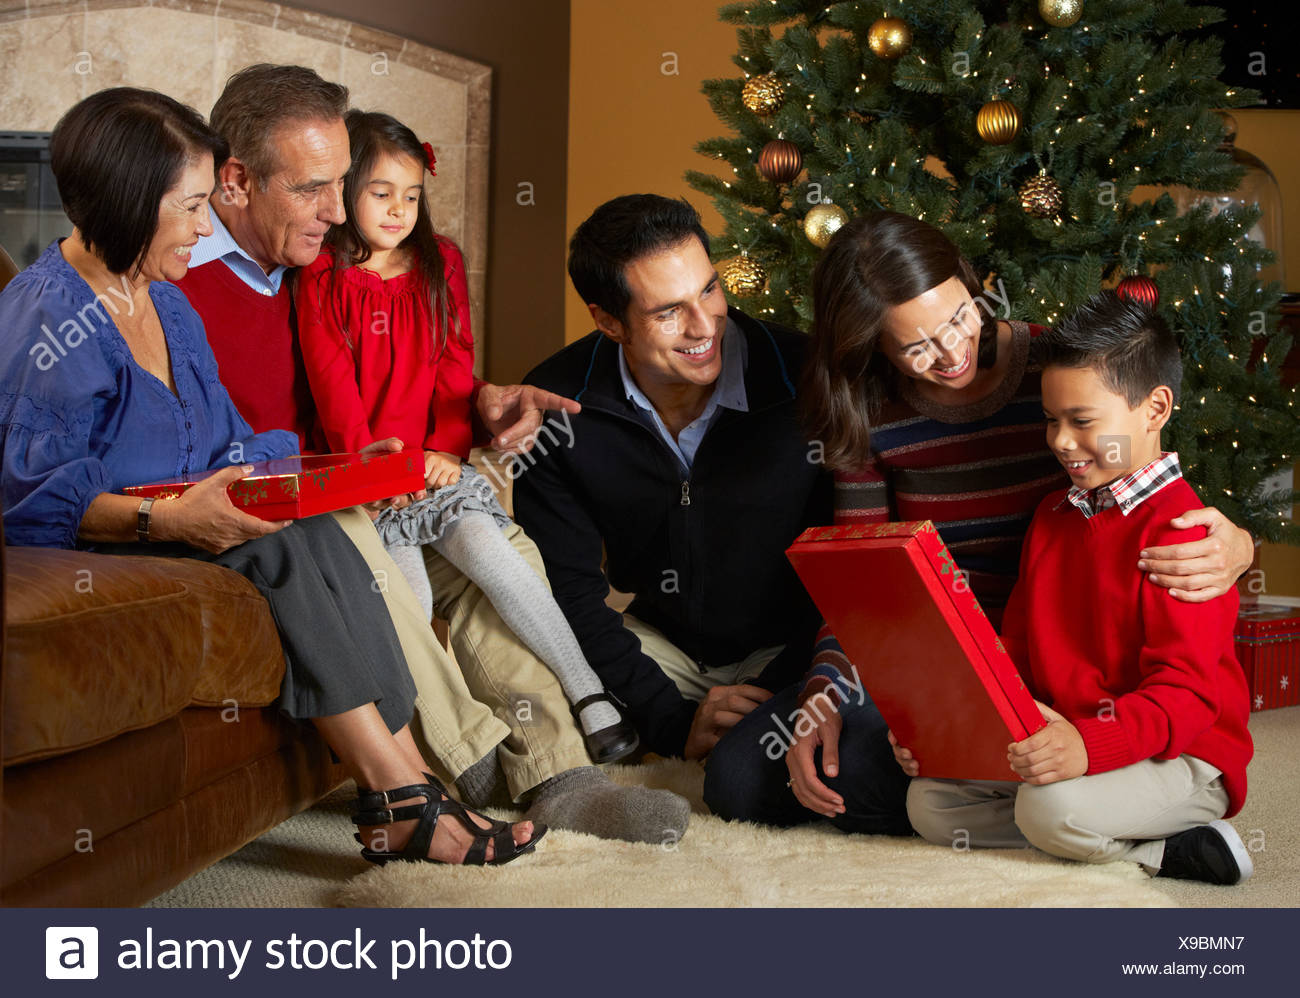 Apertura Regali Di Natale.Multi Generazione Apertura Famiglia Regali Di Natale Nella Parte Anteriore Della Struttura Ad Albero Foto Stock Alamy